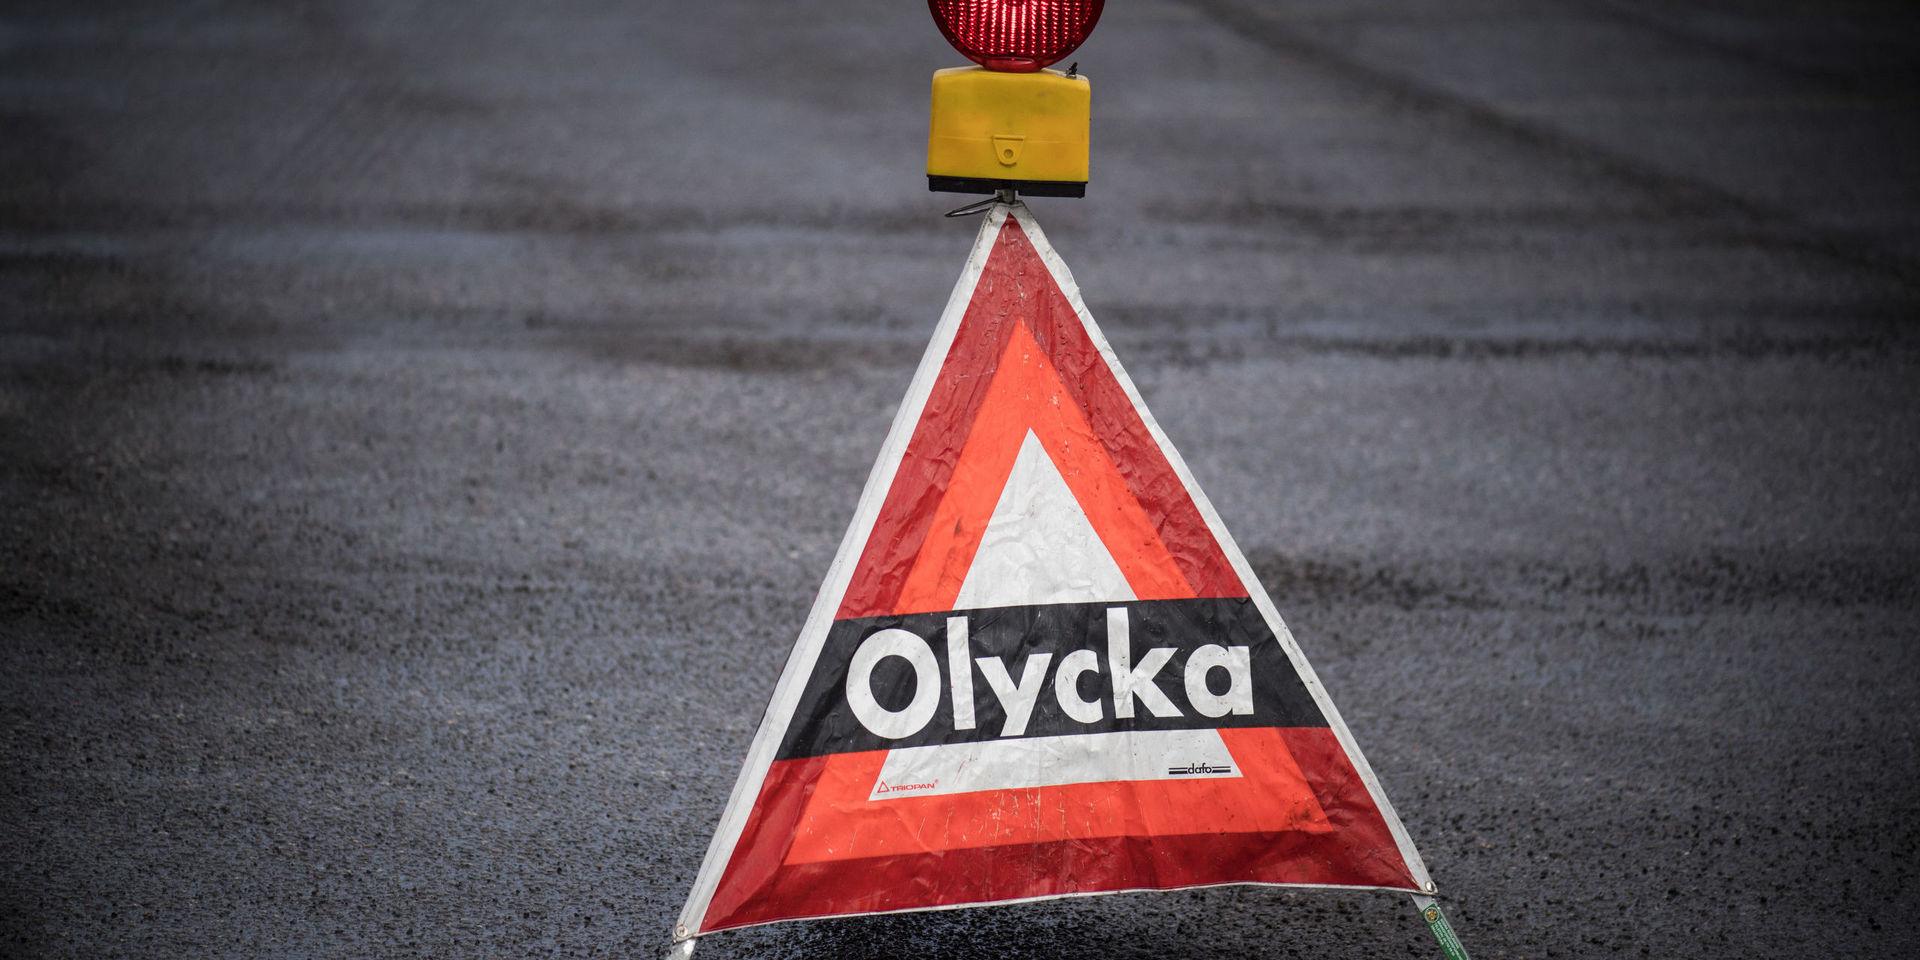 En person omkom i en trafikolycka i Uppsala. 